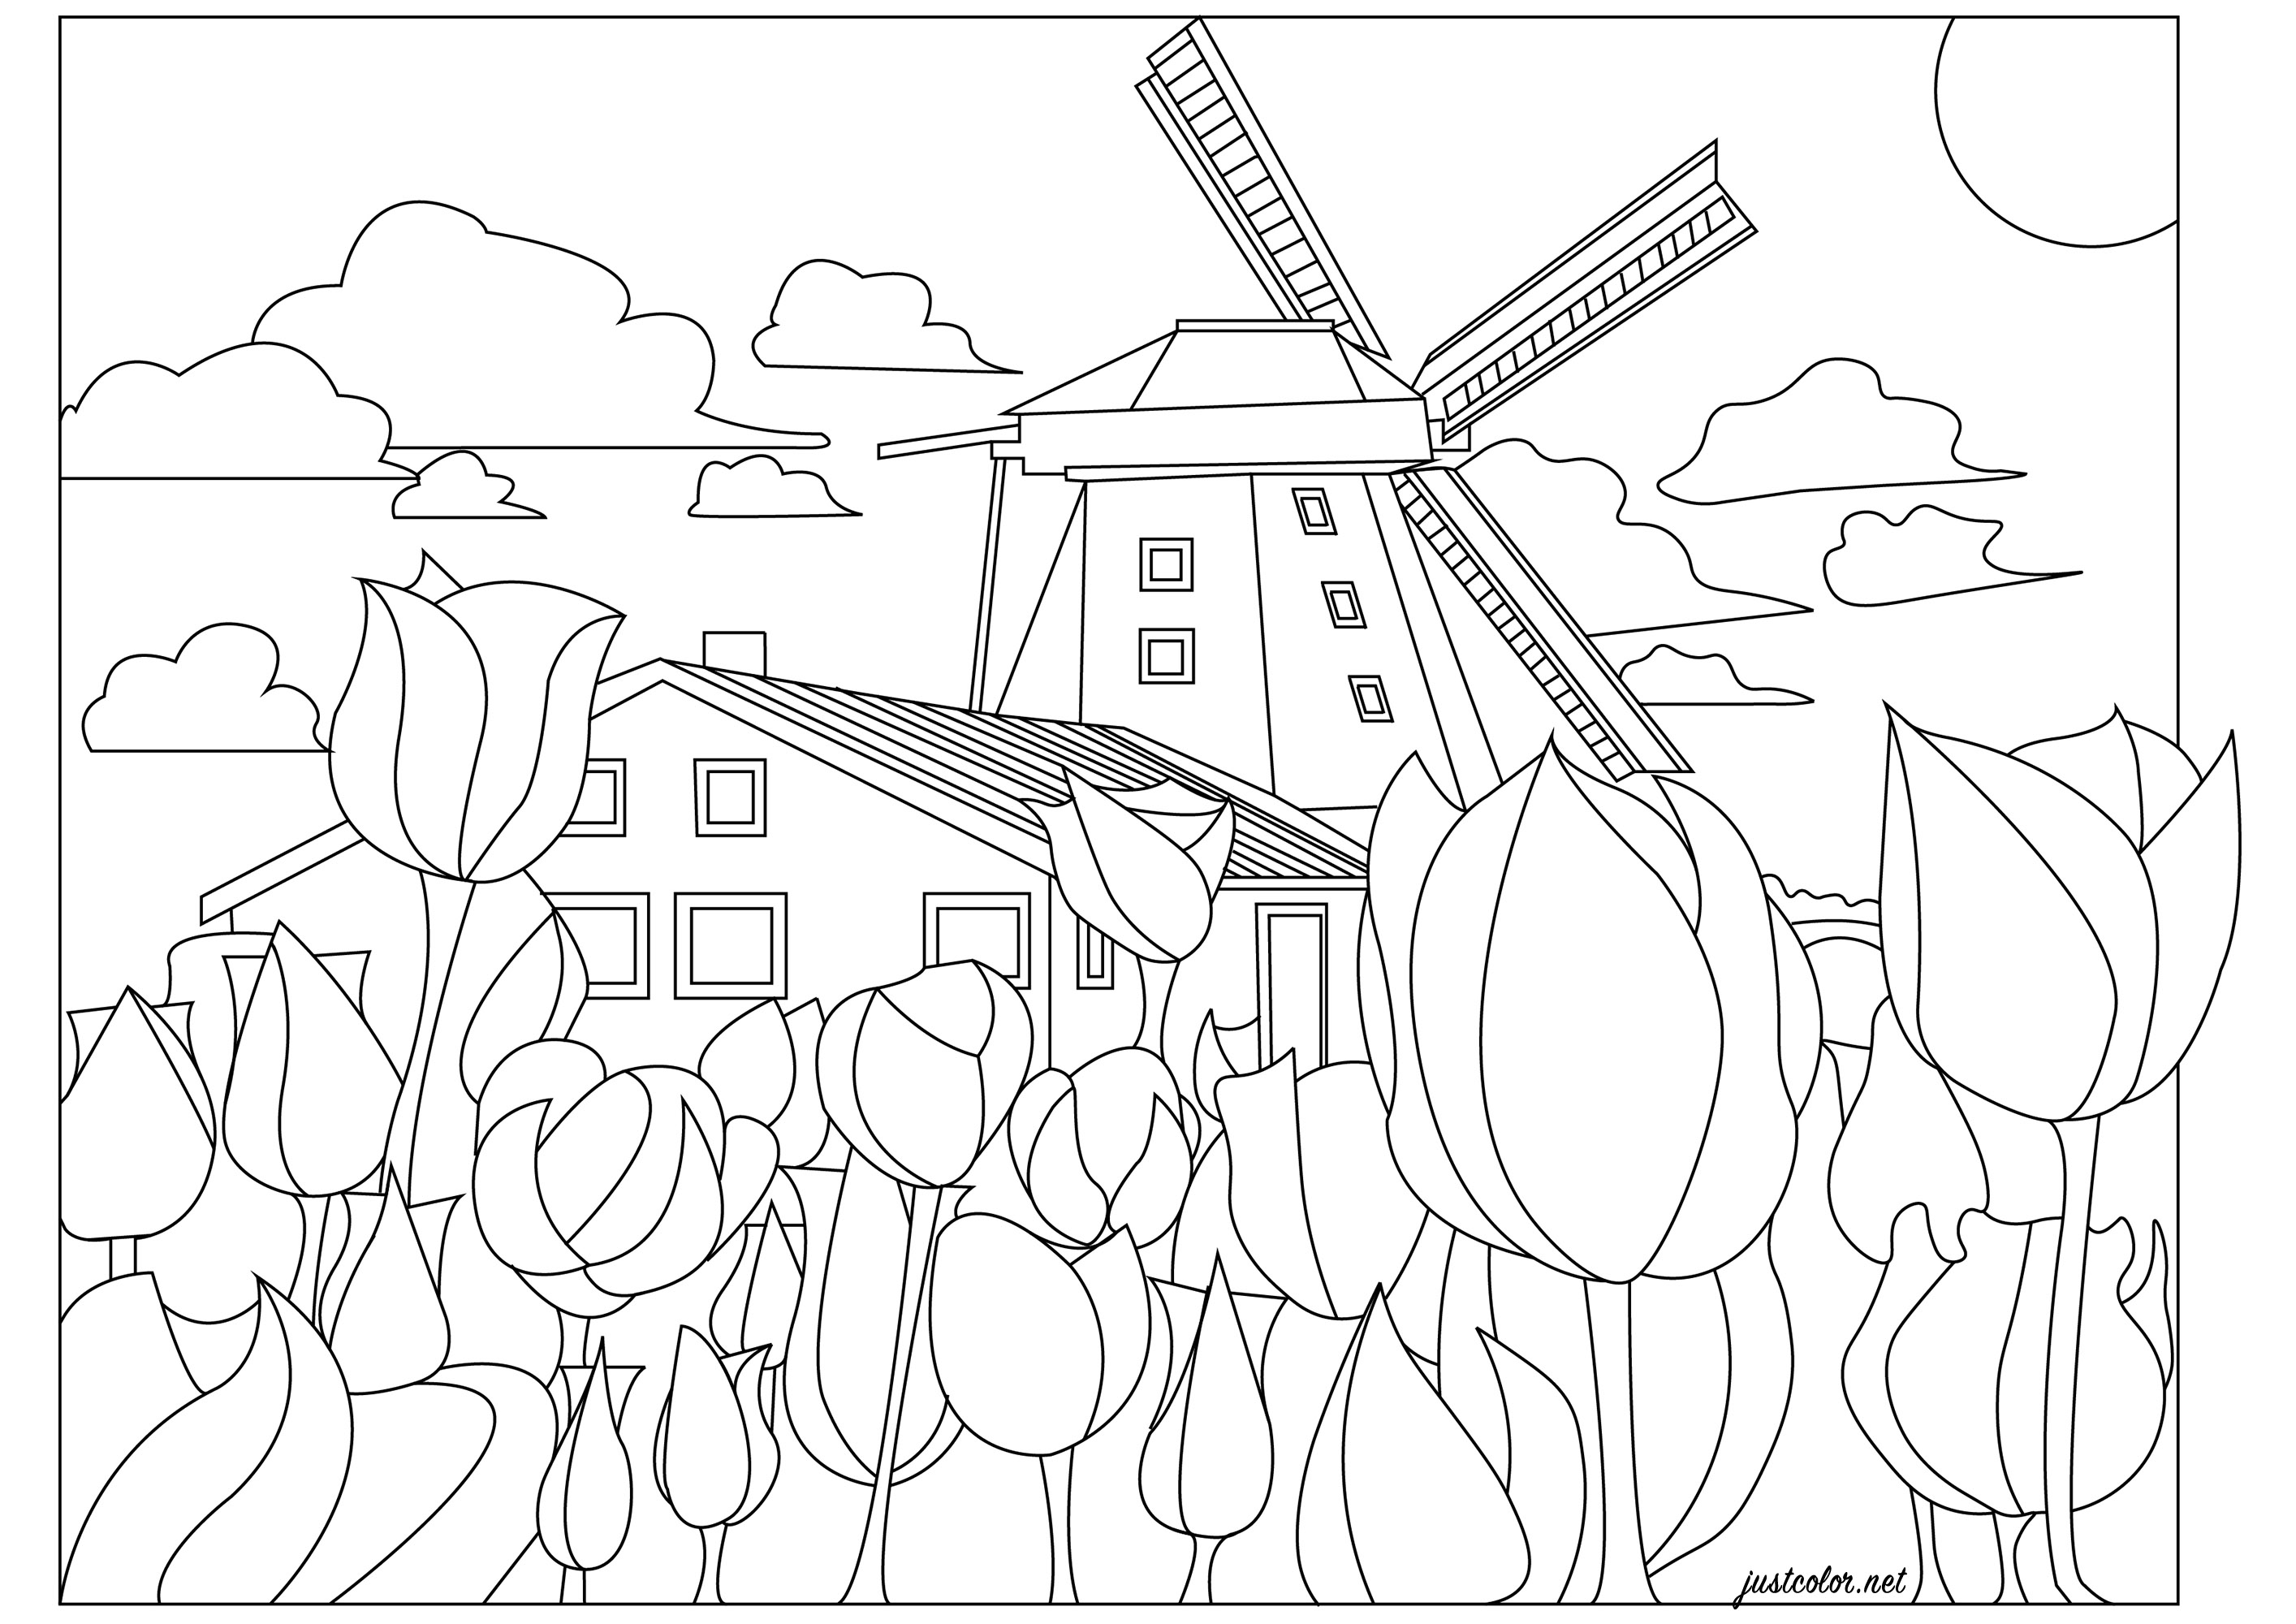 Die Niederlande, das Land der Windmühlen und Tulpenfelder. Die niederländische Landschaft im Frühling! Eine Malvorlage mit Tulpen in tausend Farben (nach Wahl), einer Windmühle und einem typisch niederländischen Haus, Künstler : Morgan